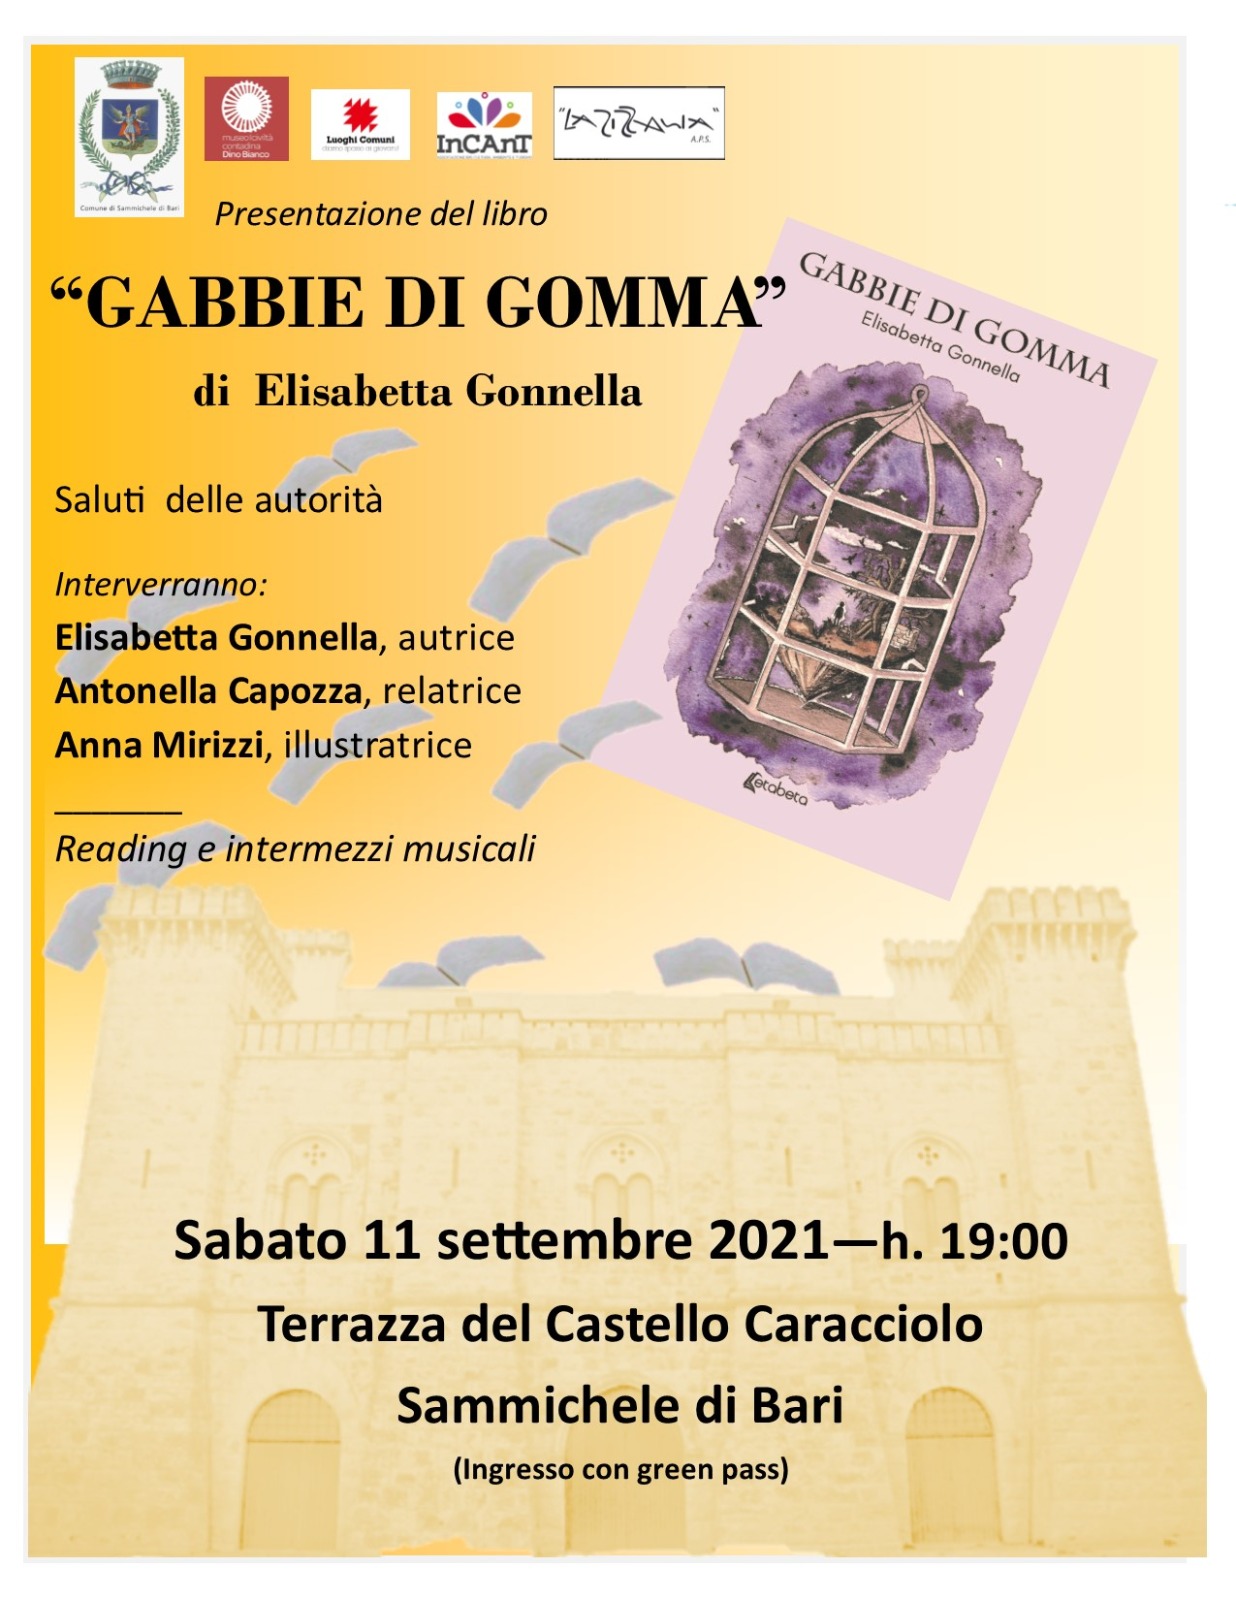 Sammichele di Bari, nel Castello Caracciolo presentazione del libro ''Gabbie di gomma''